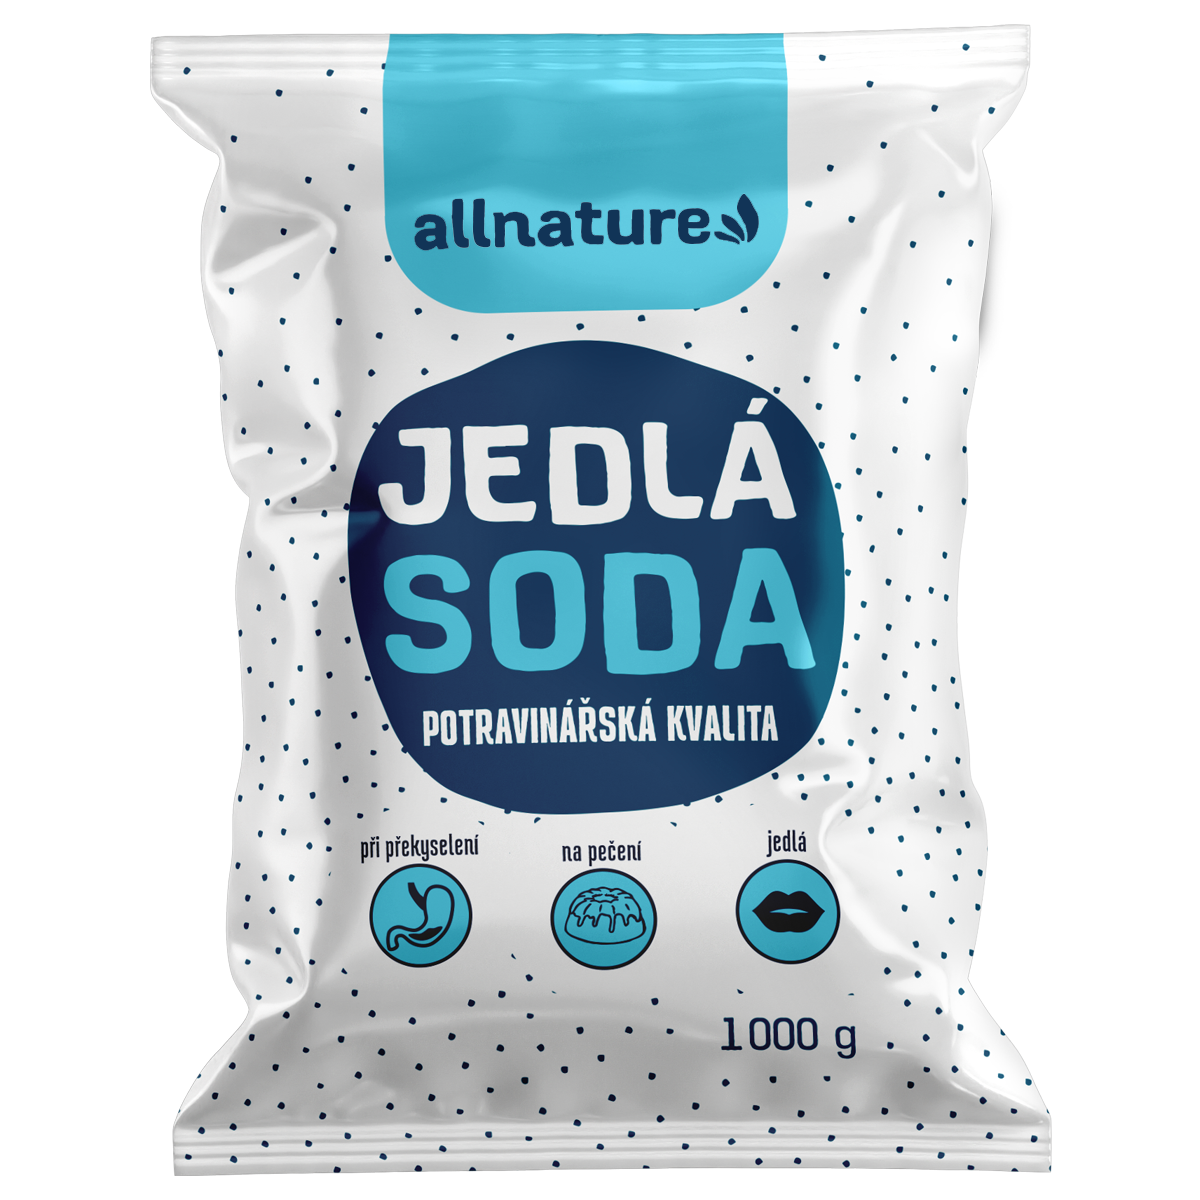 Allnature Jedlá soda (1 kg) - II. jakost - potravinářská kvalita